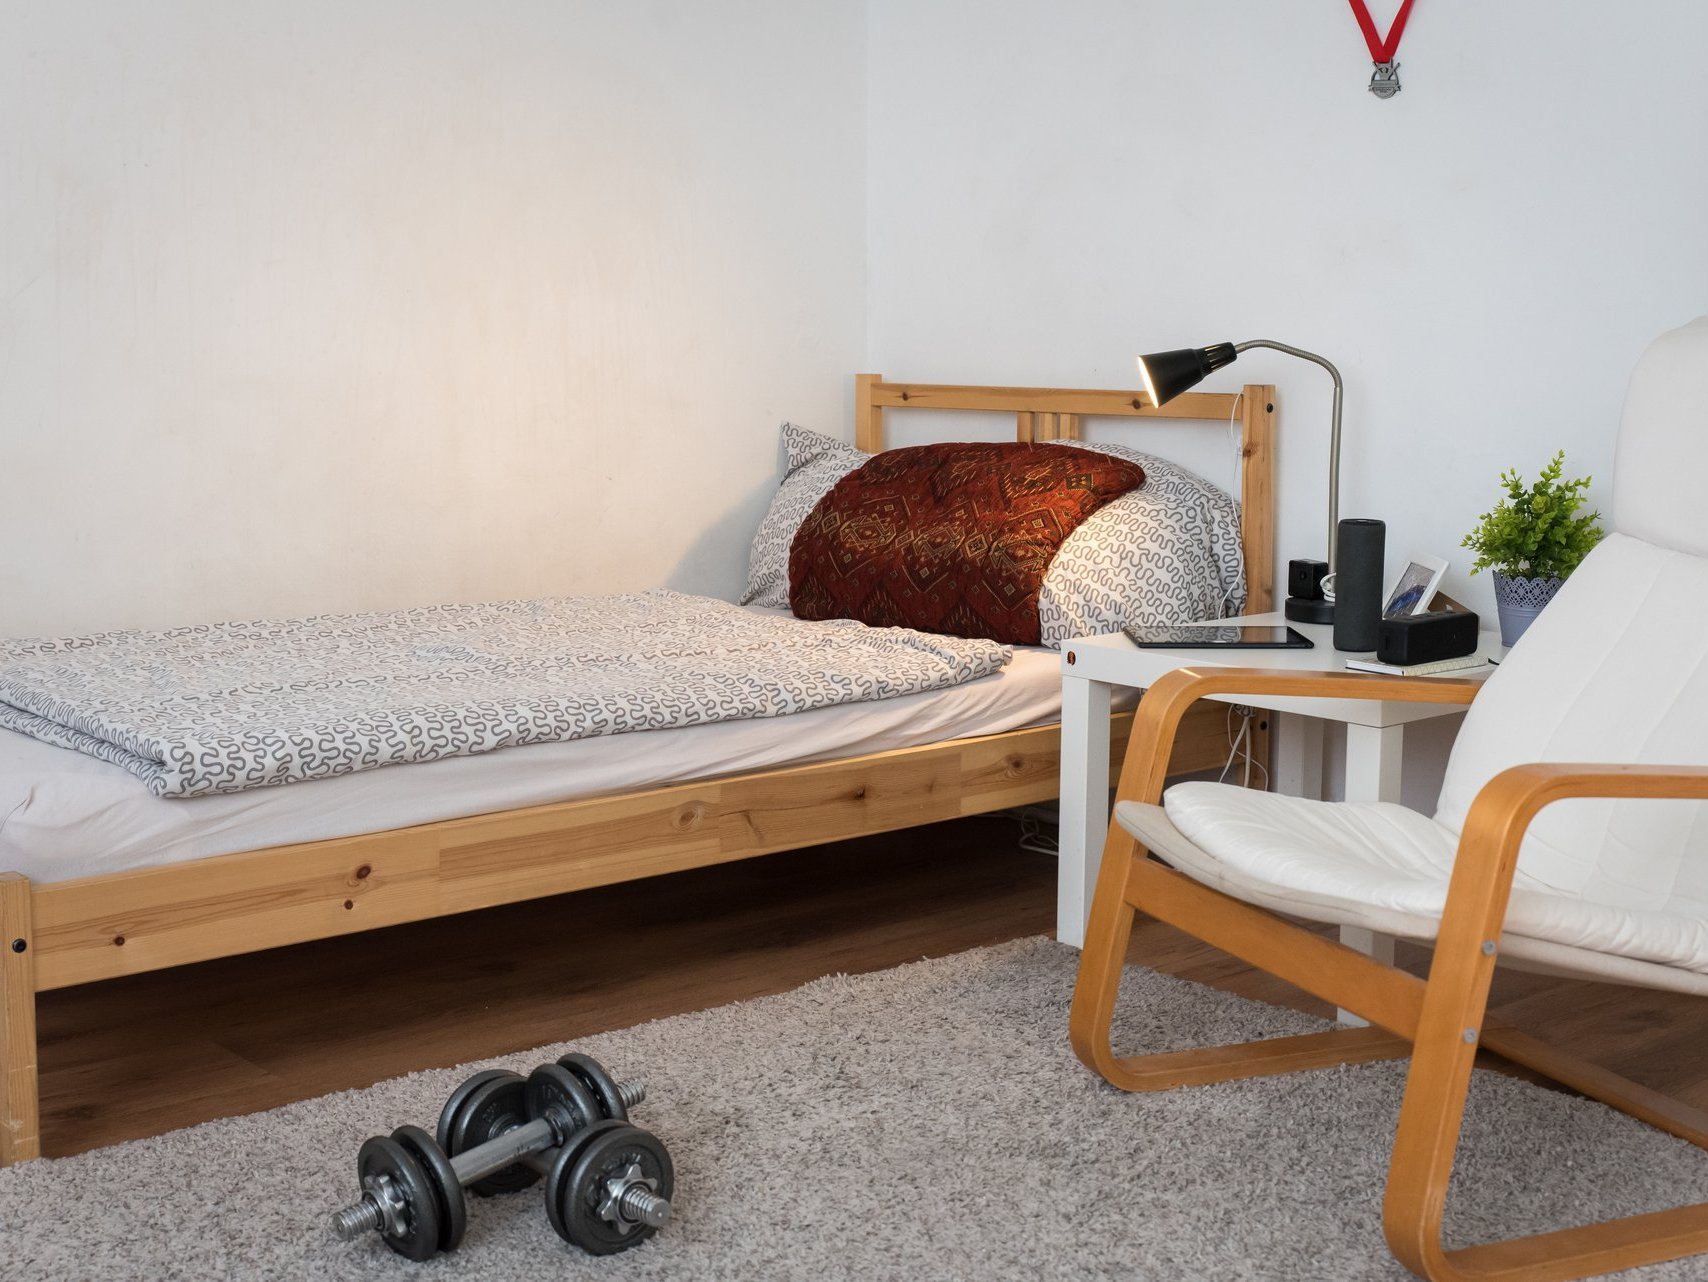 Zimmer mit Bett - im Vordergrund liegen Hantel-Gewichte und an der Wand hängen zwei Sportmedaillen 